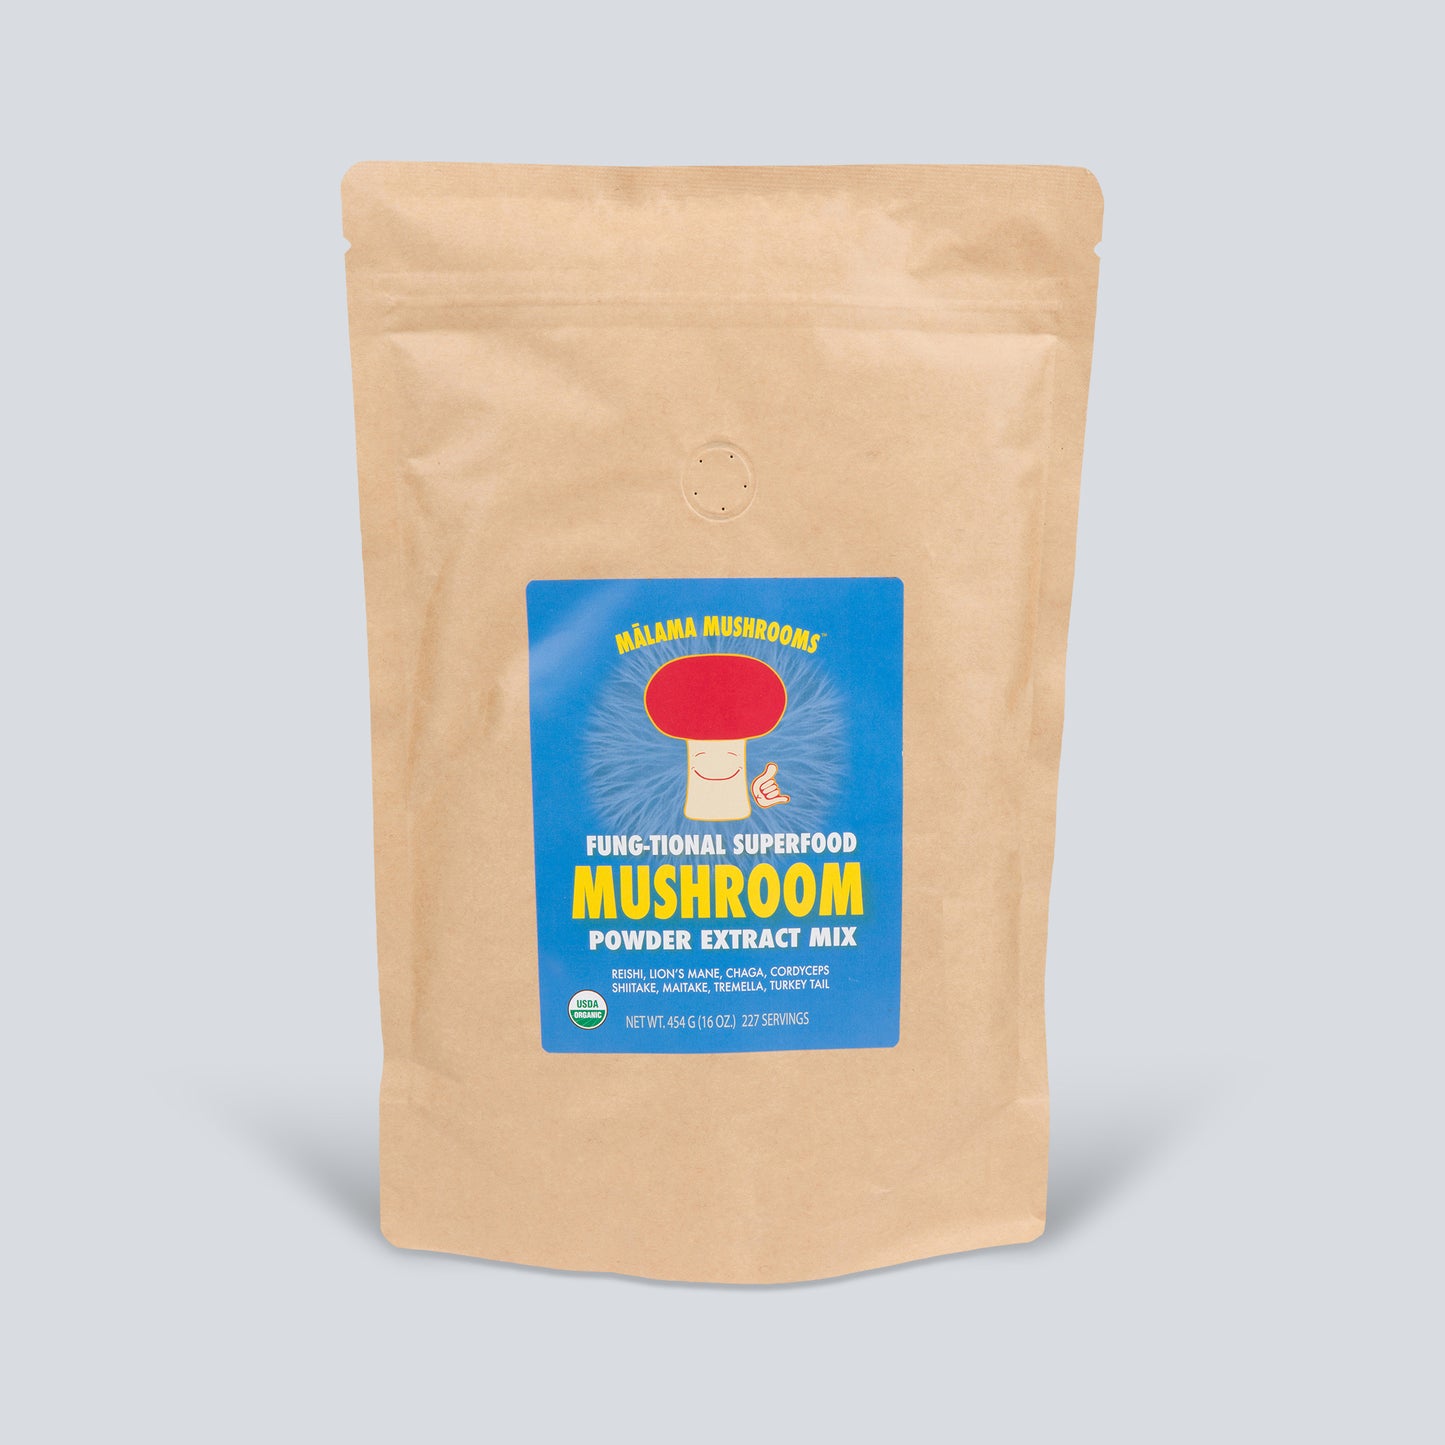 8 Mushroom Superfood Powder Mix | USDA Organic – Mālama Mushrooms Hawaii | Jacken